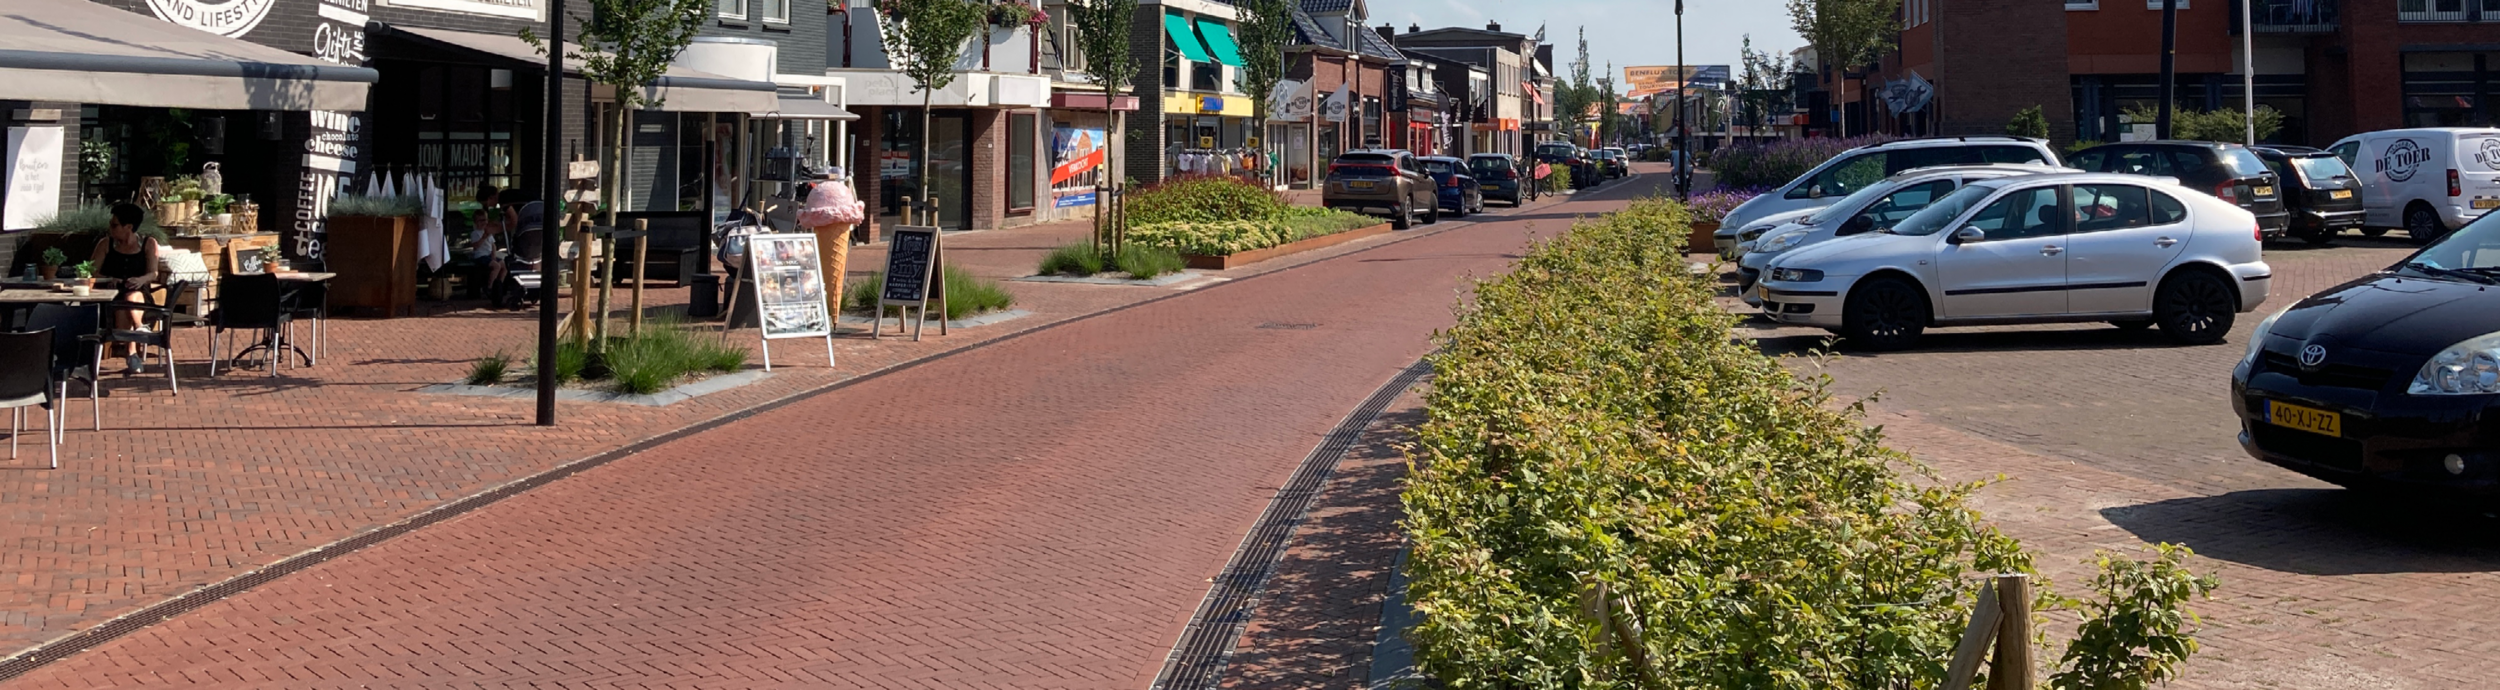 Roosteres en lijngoten in straat De Kolk centrum Surhuisterveen